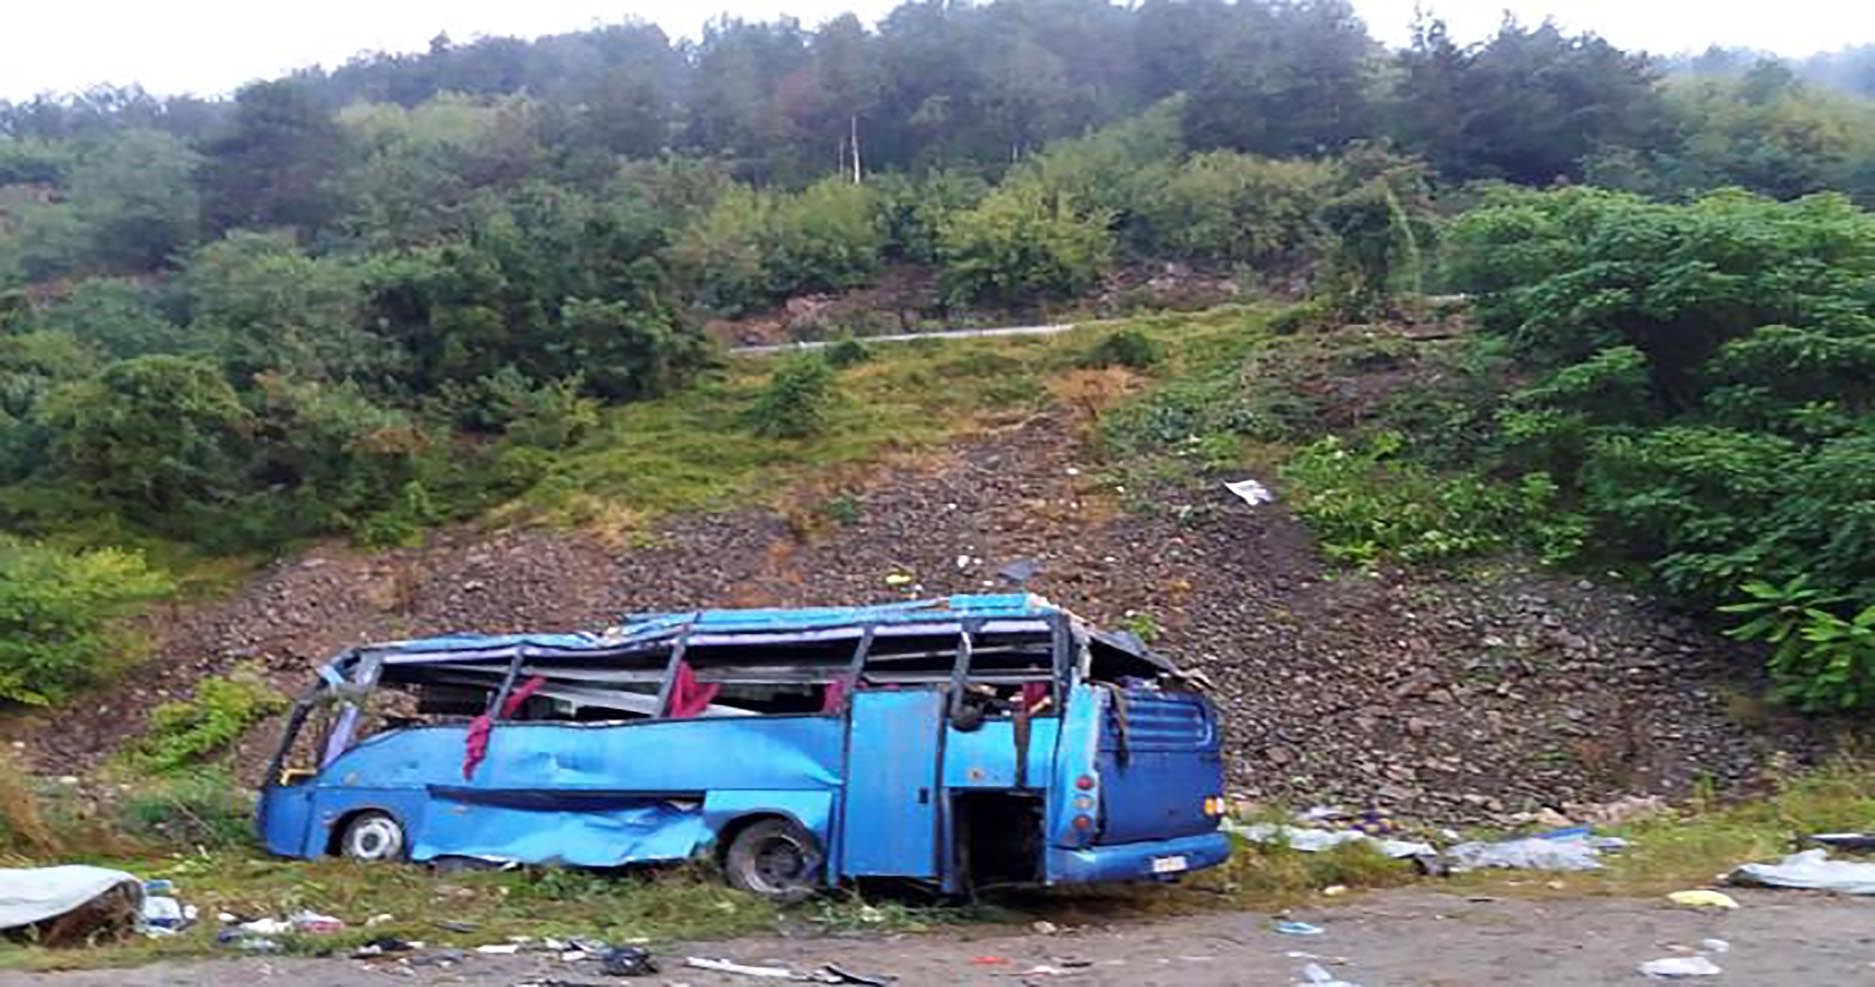 “Tourist bus crashes in Bulgaria: 15 killed”